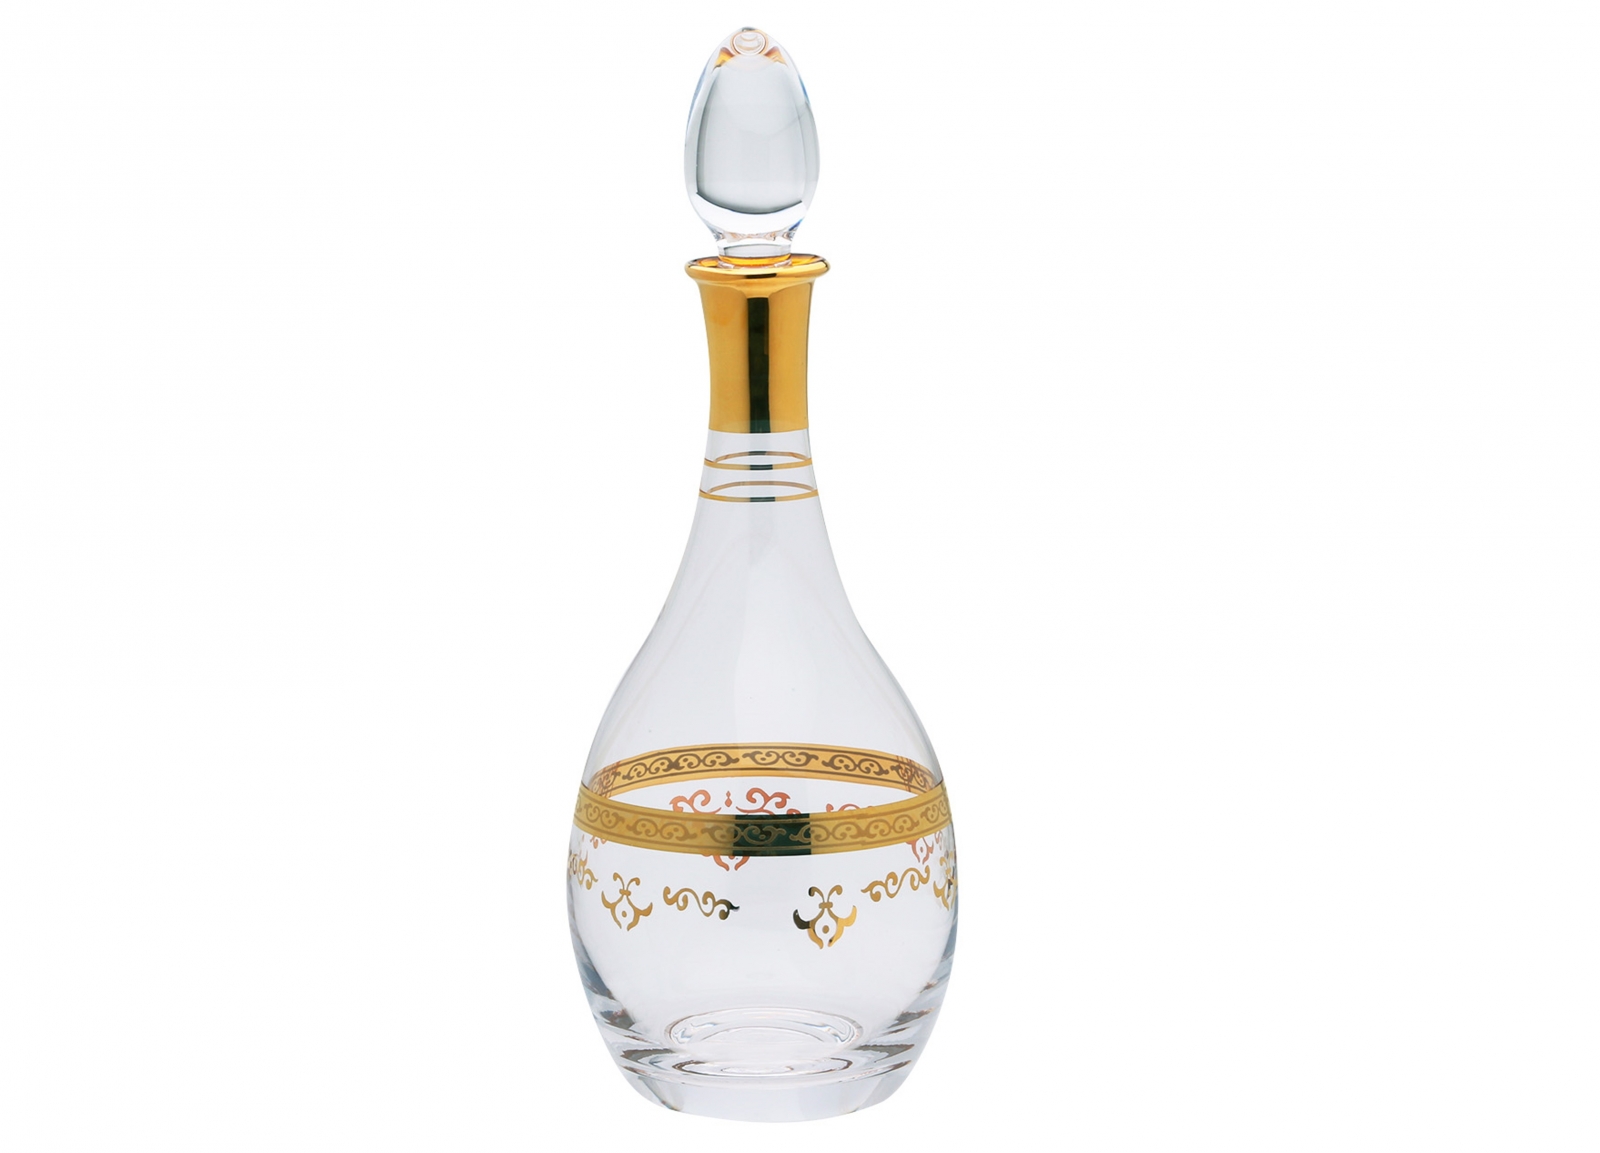 Liquor Bottle with Rich Gold Design